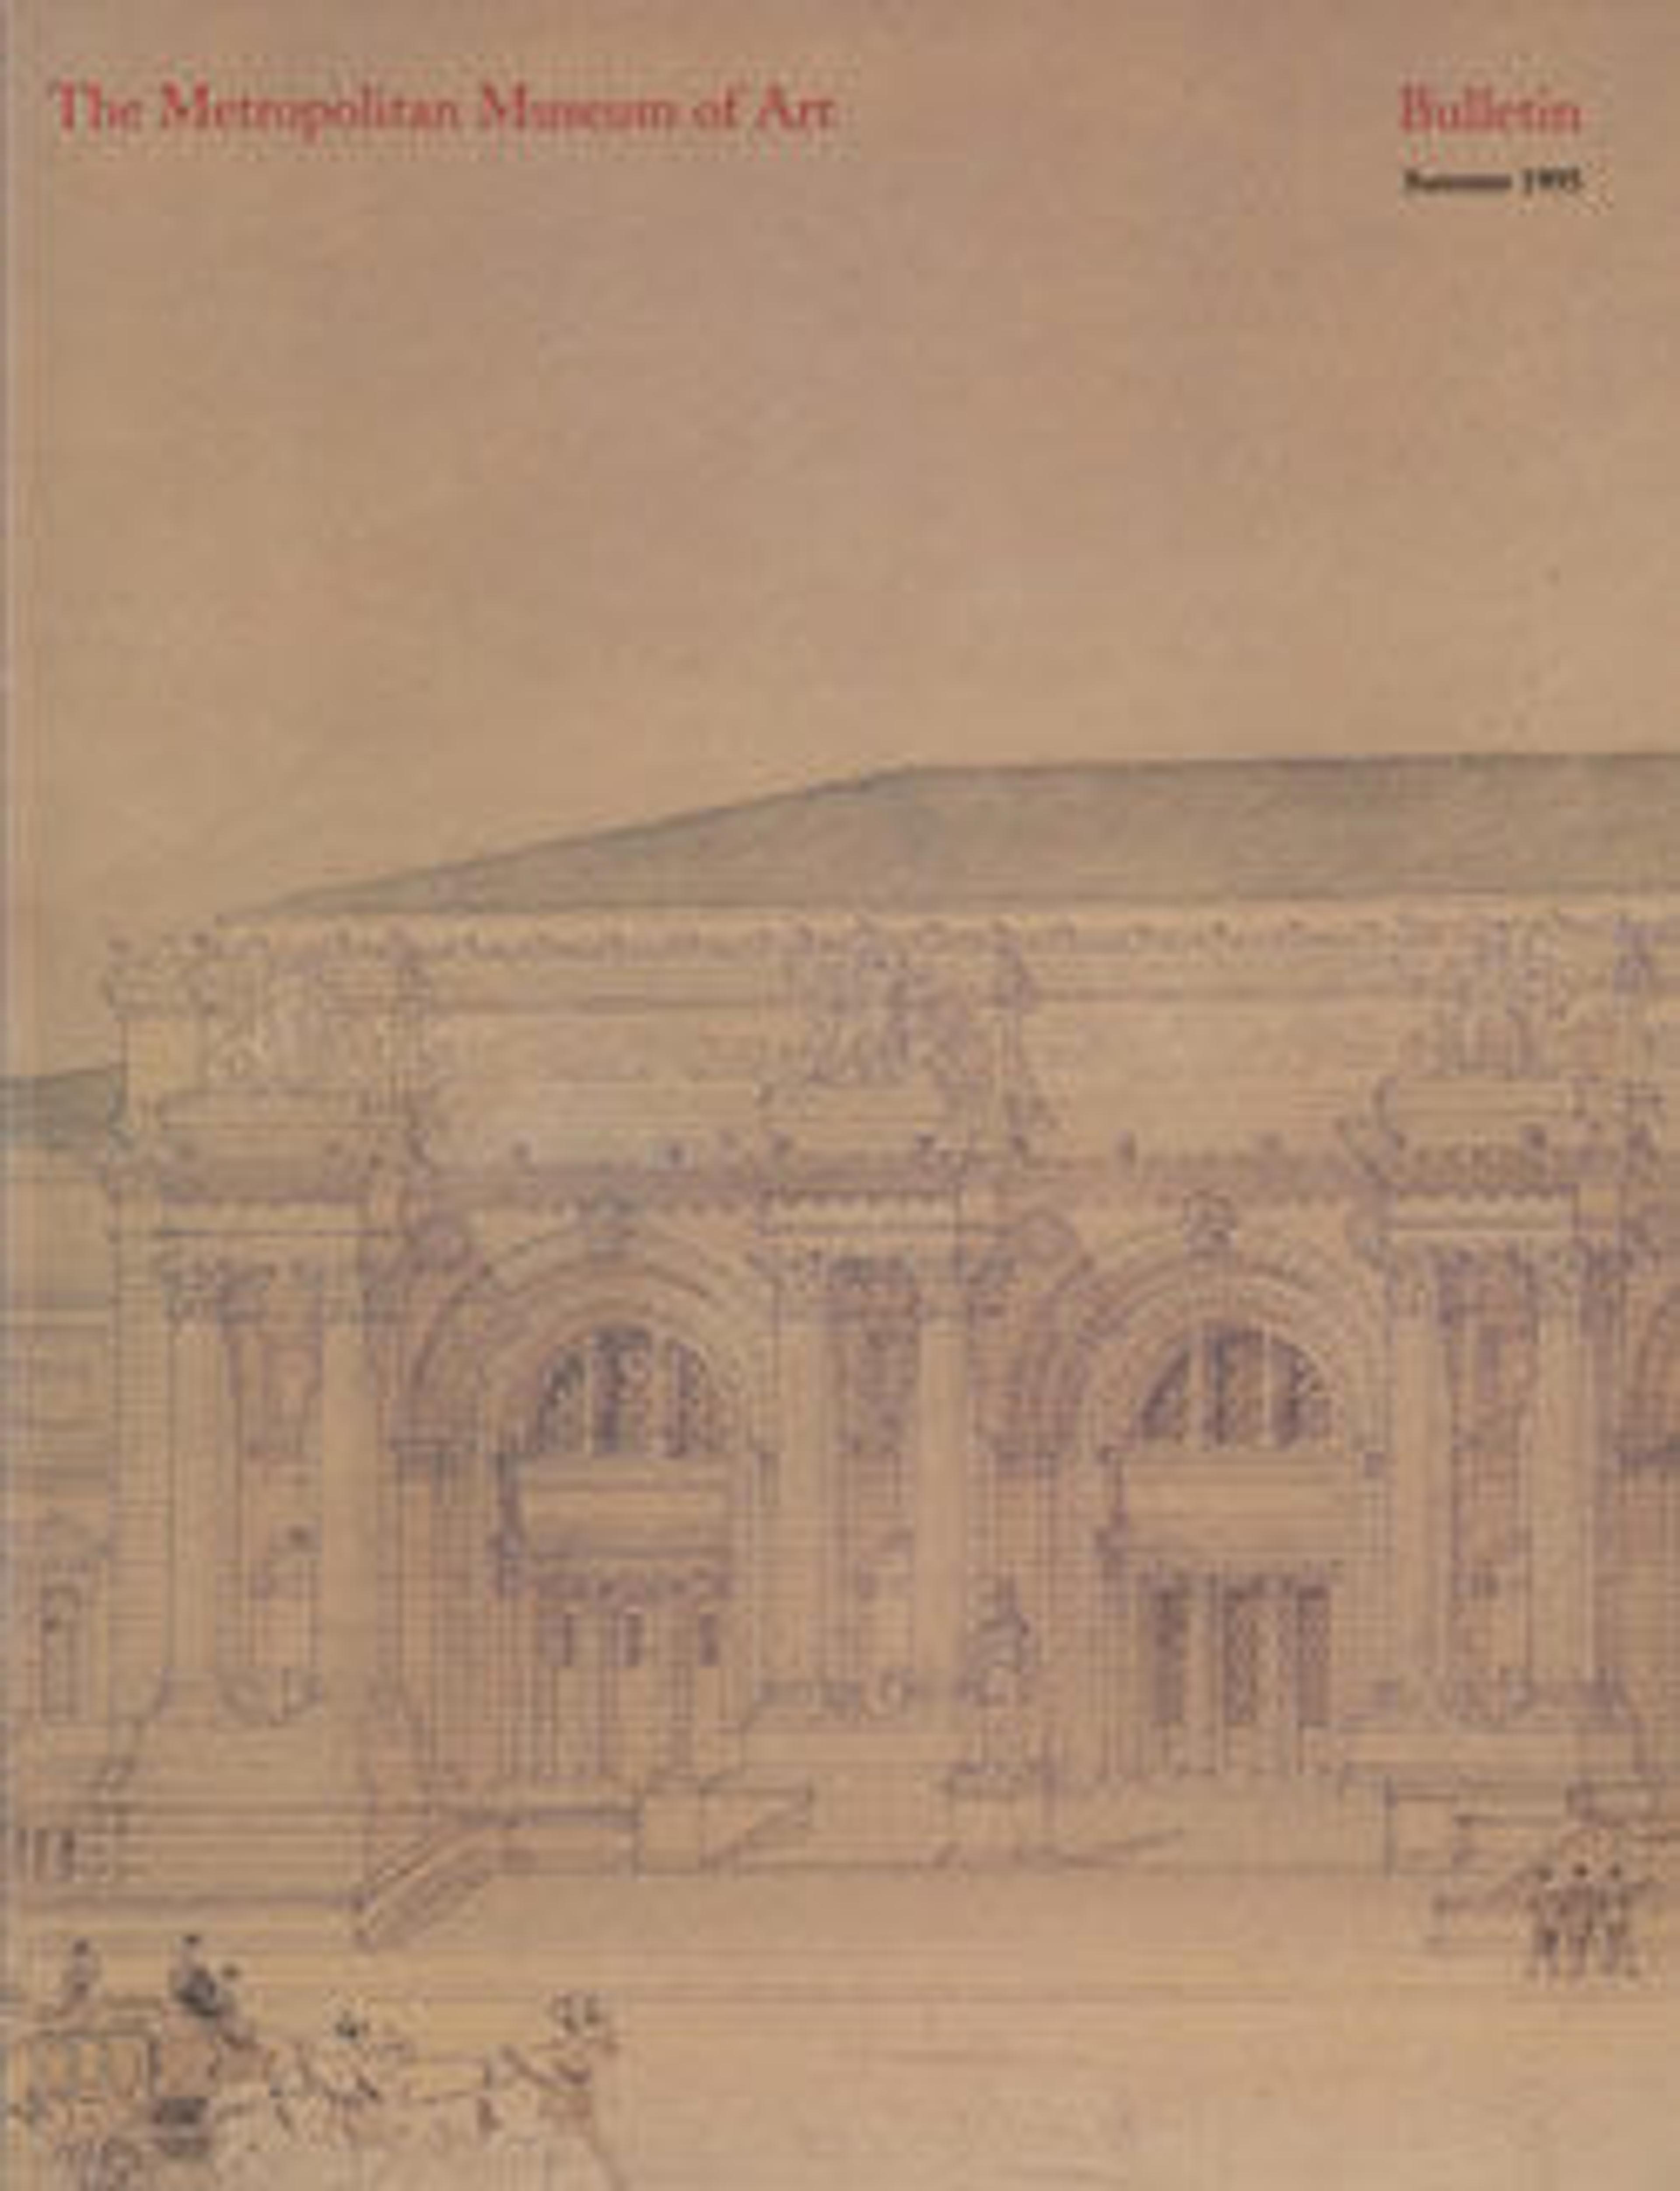 "The Metropolitan Museum of Art: An Architectural History": The Metropolitan Museum of Art Bulletin, v. 53, no. 1 (Summer, 1995)